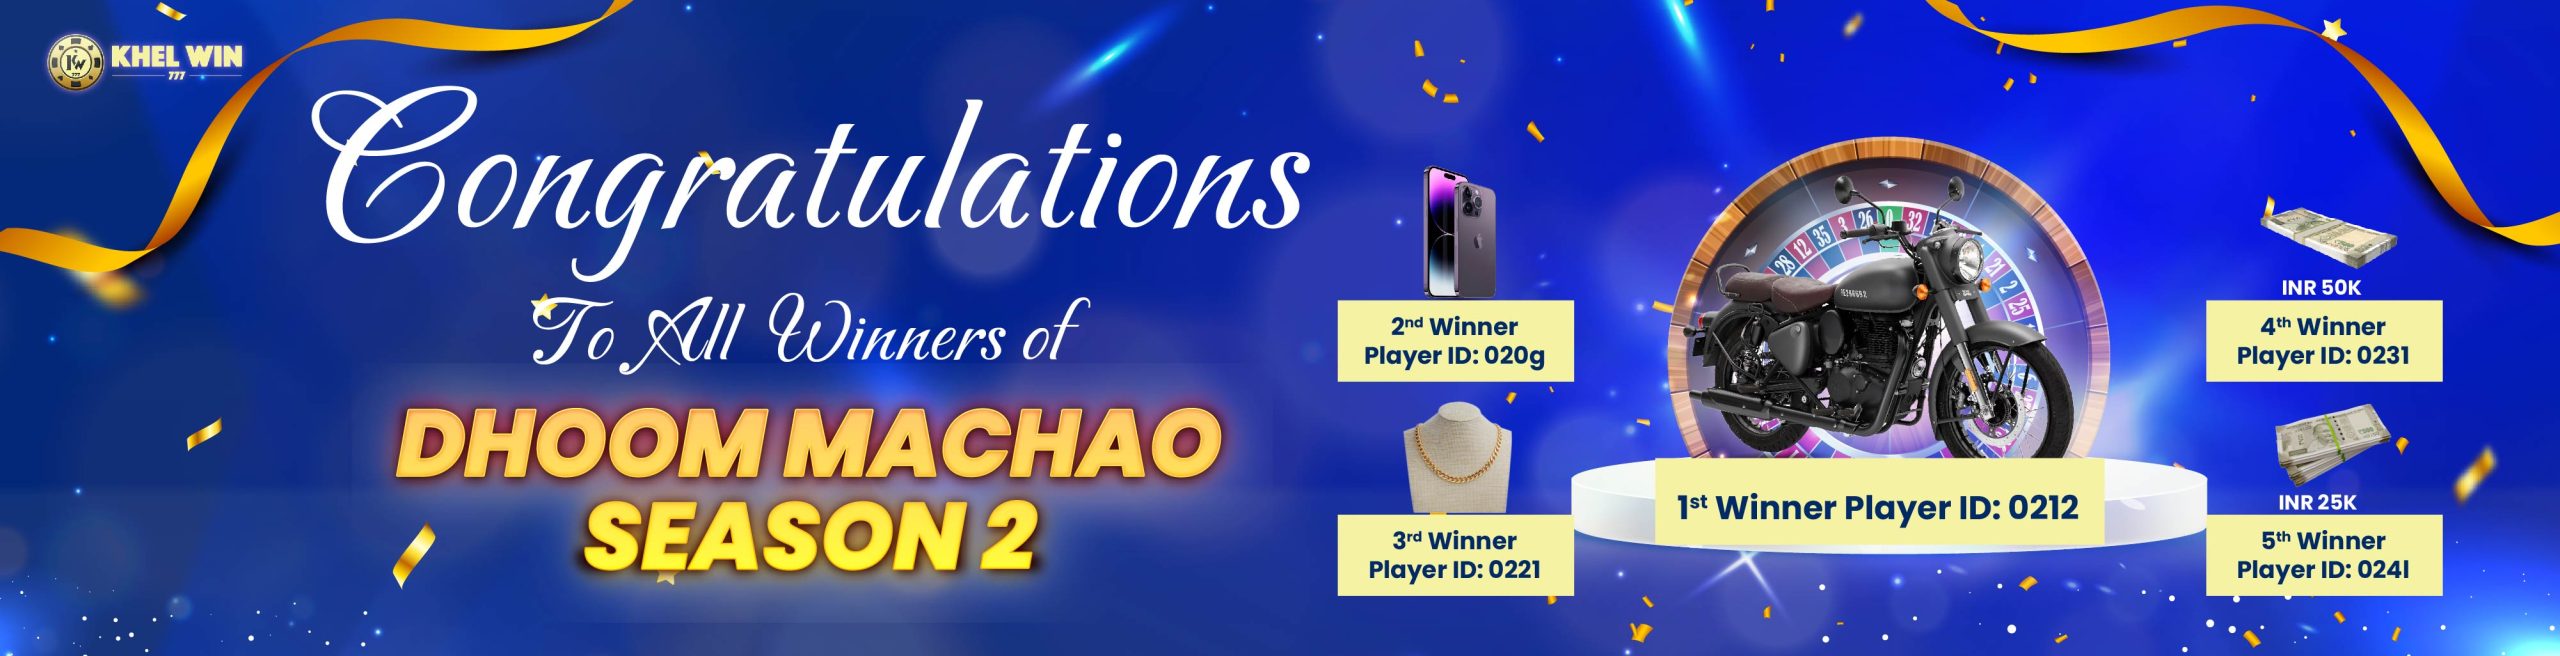 Dhoom Machao S2 Winners